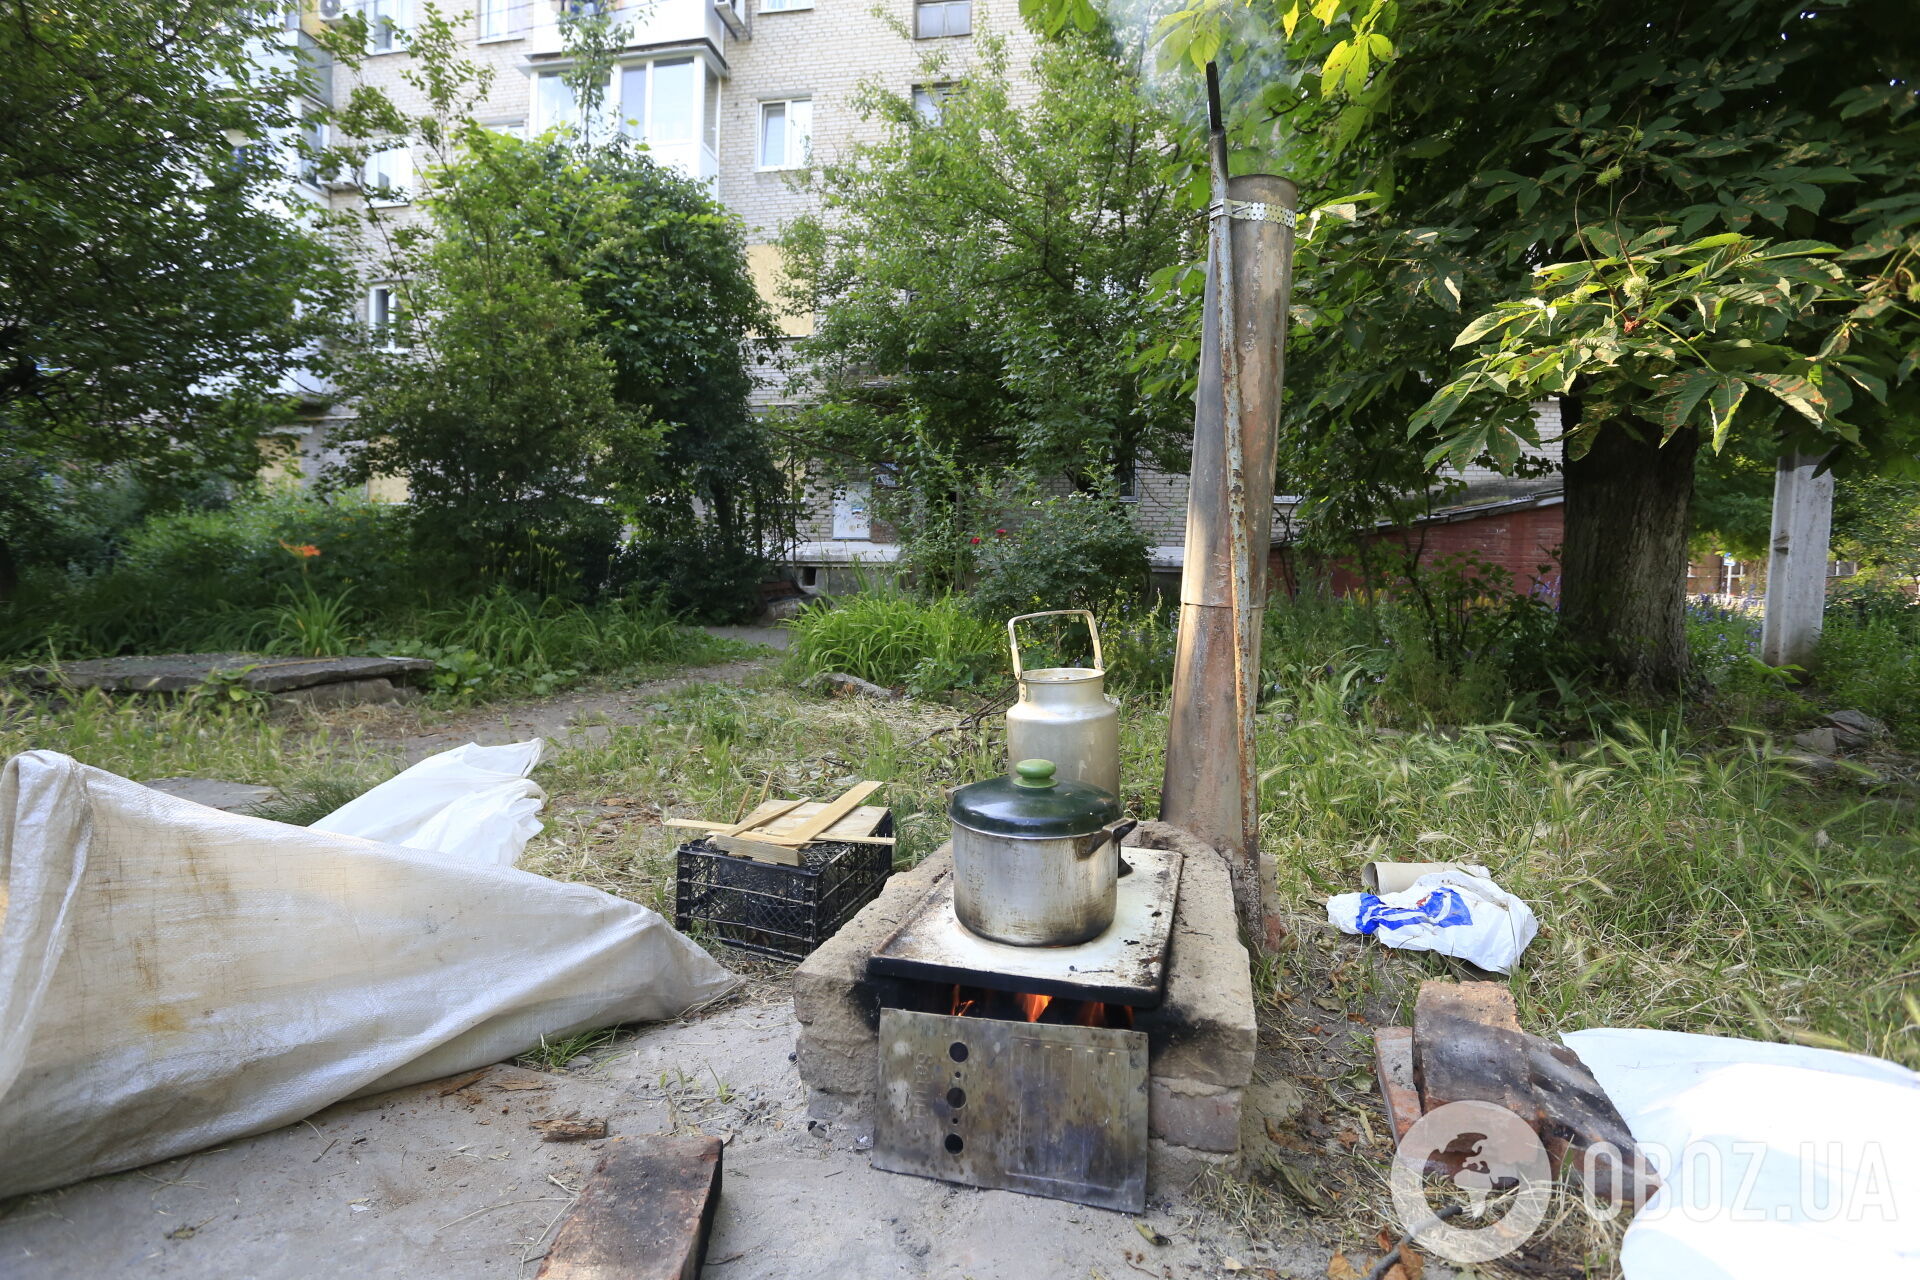 Славянск без воды и газа, но украинский: эксклюзивные фото жизни в городе под постоянными обстрелами оккупантов